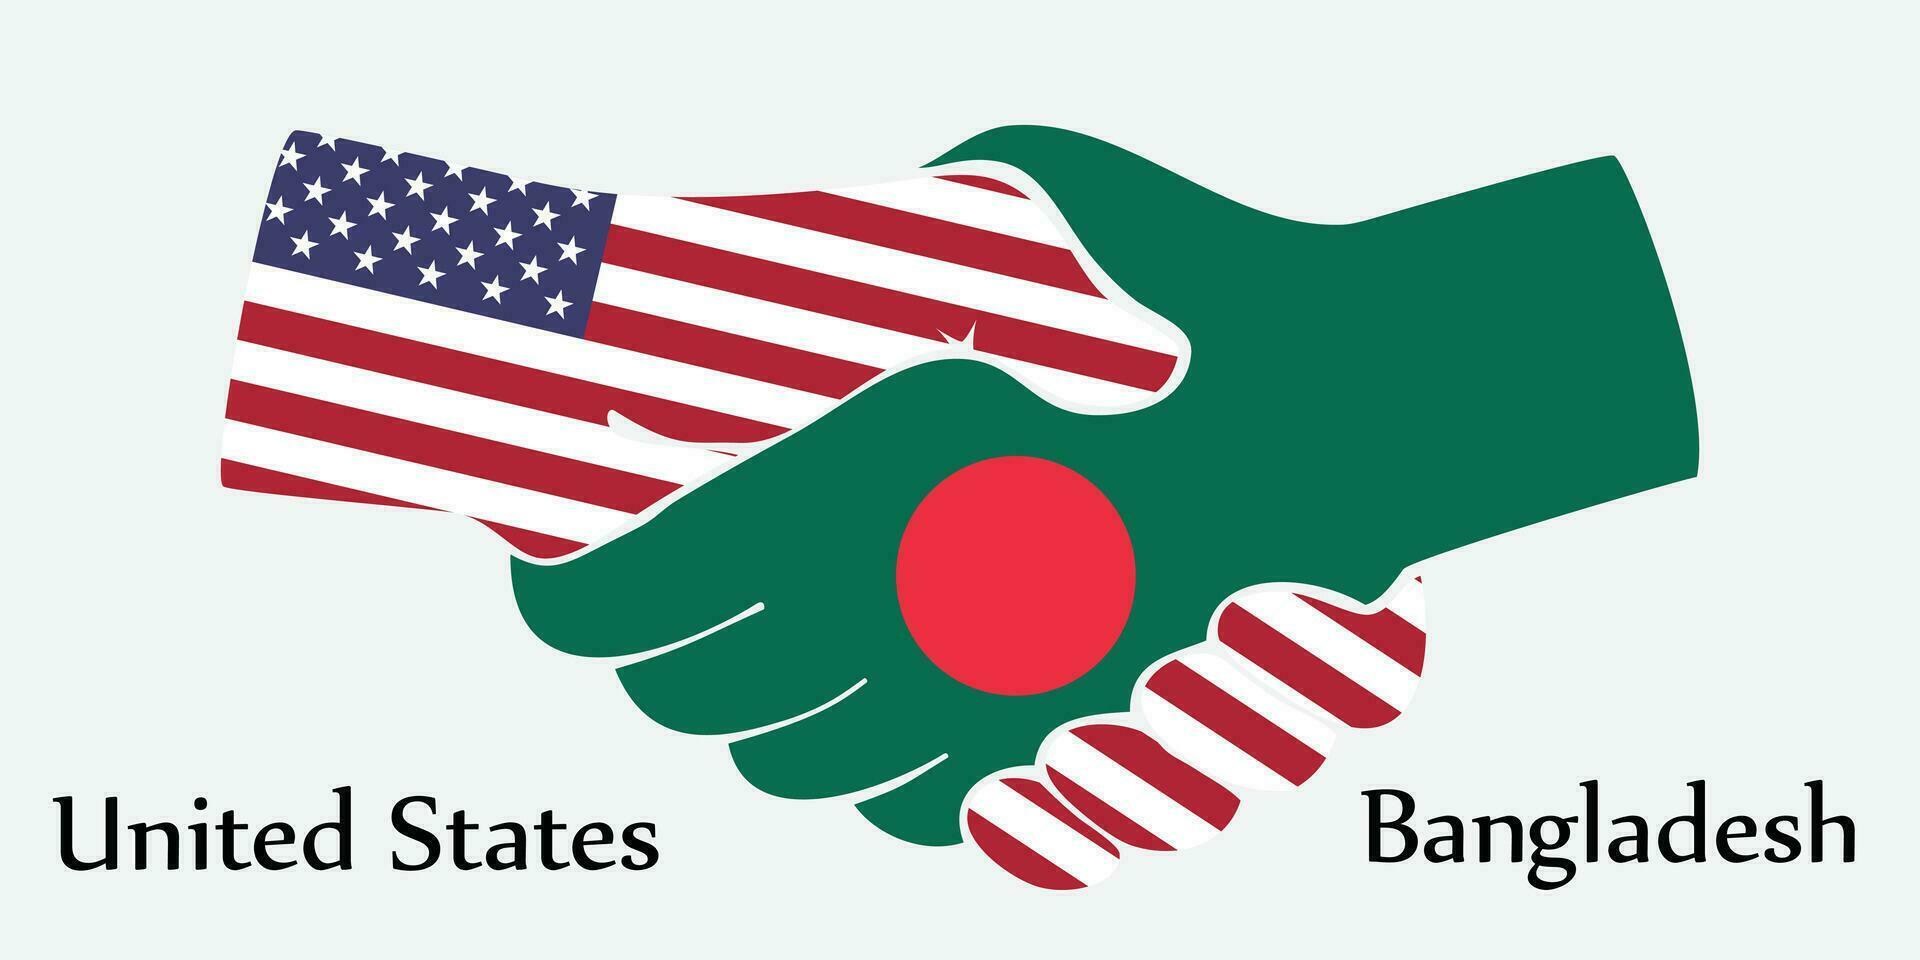 diseño sacudir manos. concepto unido estados y Bangladesh el nacimiento país un bueno contacto, negocio, viajar, transporte y tecnología. vector